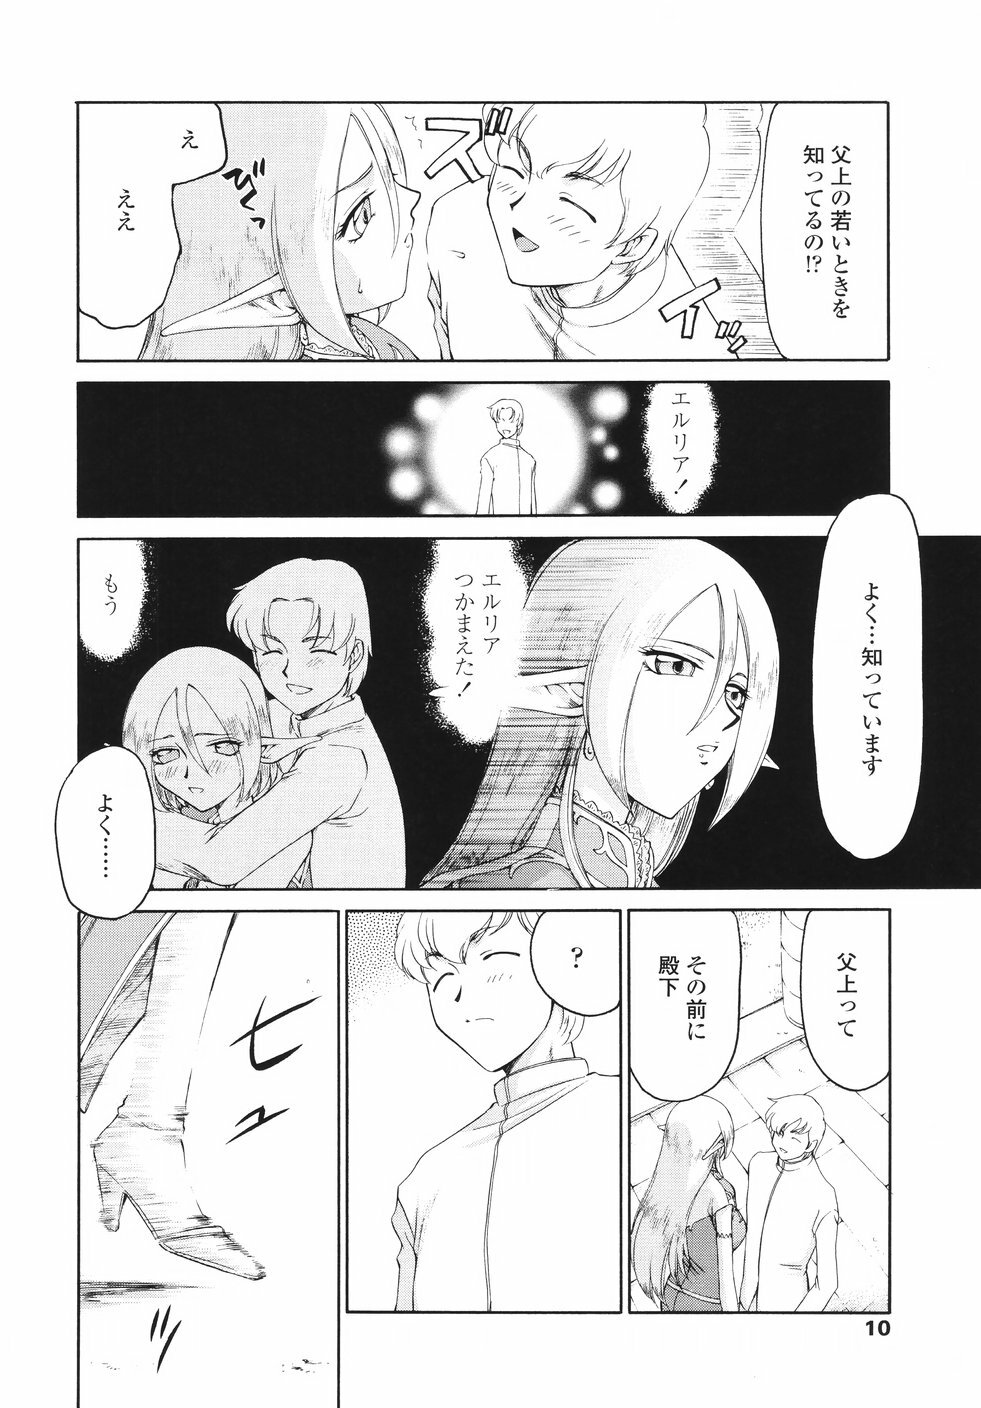 [Taira Hajime] Eruria page 13 full